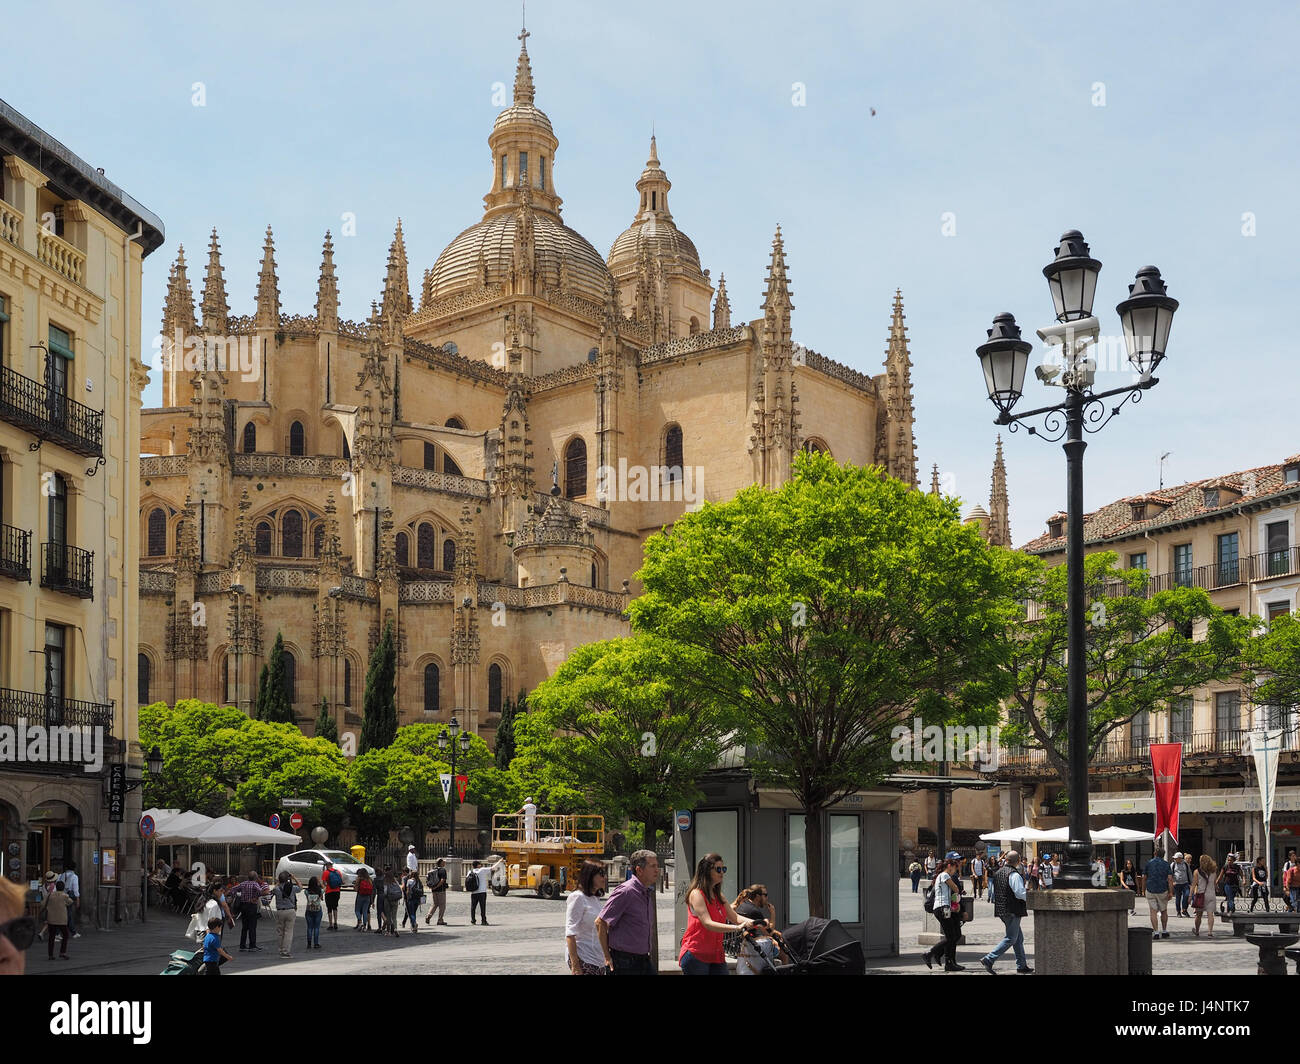 Ein Blick auf die Kathedrale Die Kathedrale Santa Maria von der Plaza Platz mit Bäumen und alte verzierte Lampe Lampen Laterne Vordergrund Segovia Spanien Stockfoto